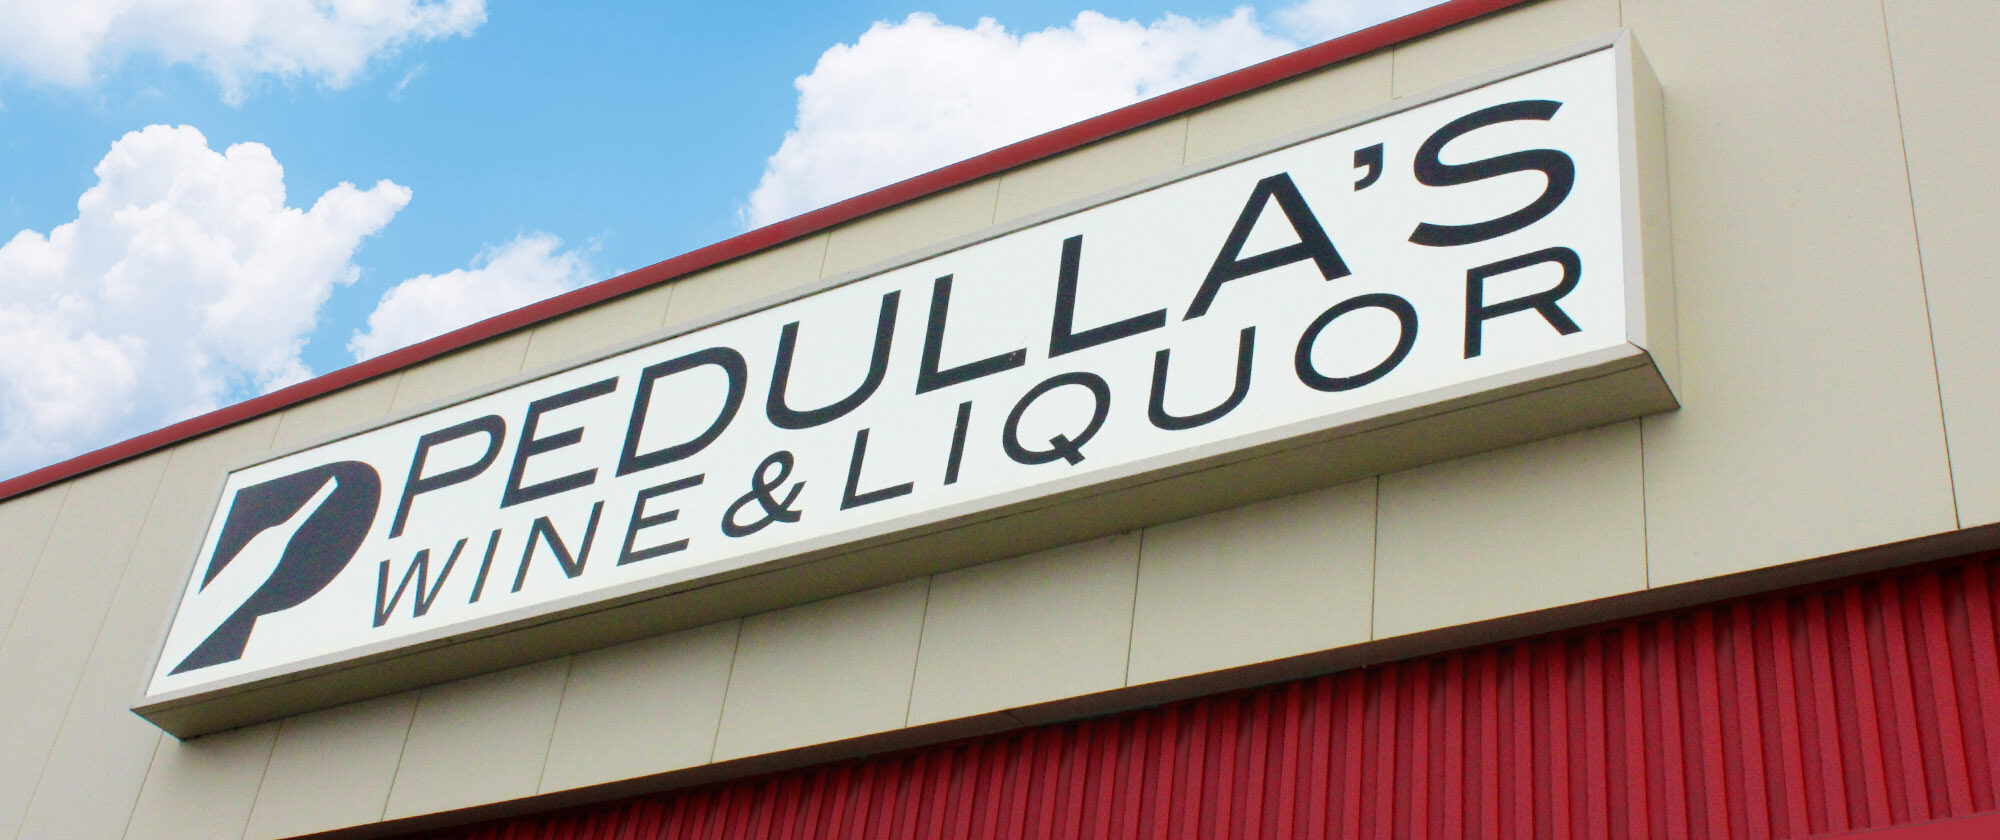 Pedullas Wine And Liquor Sign